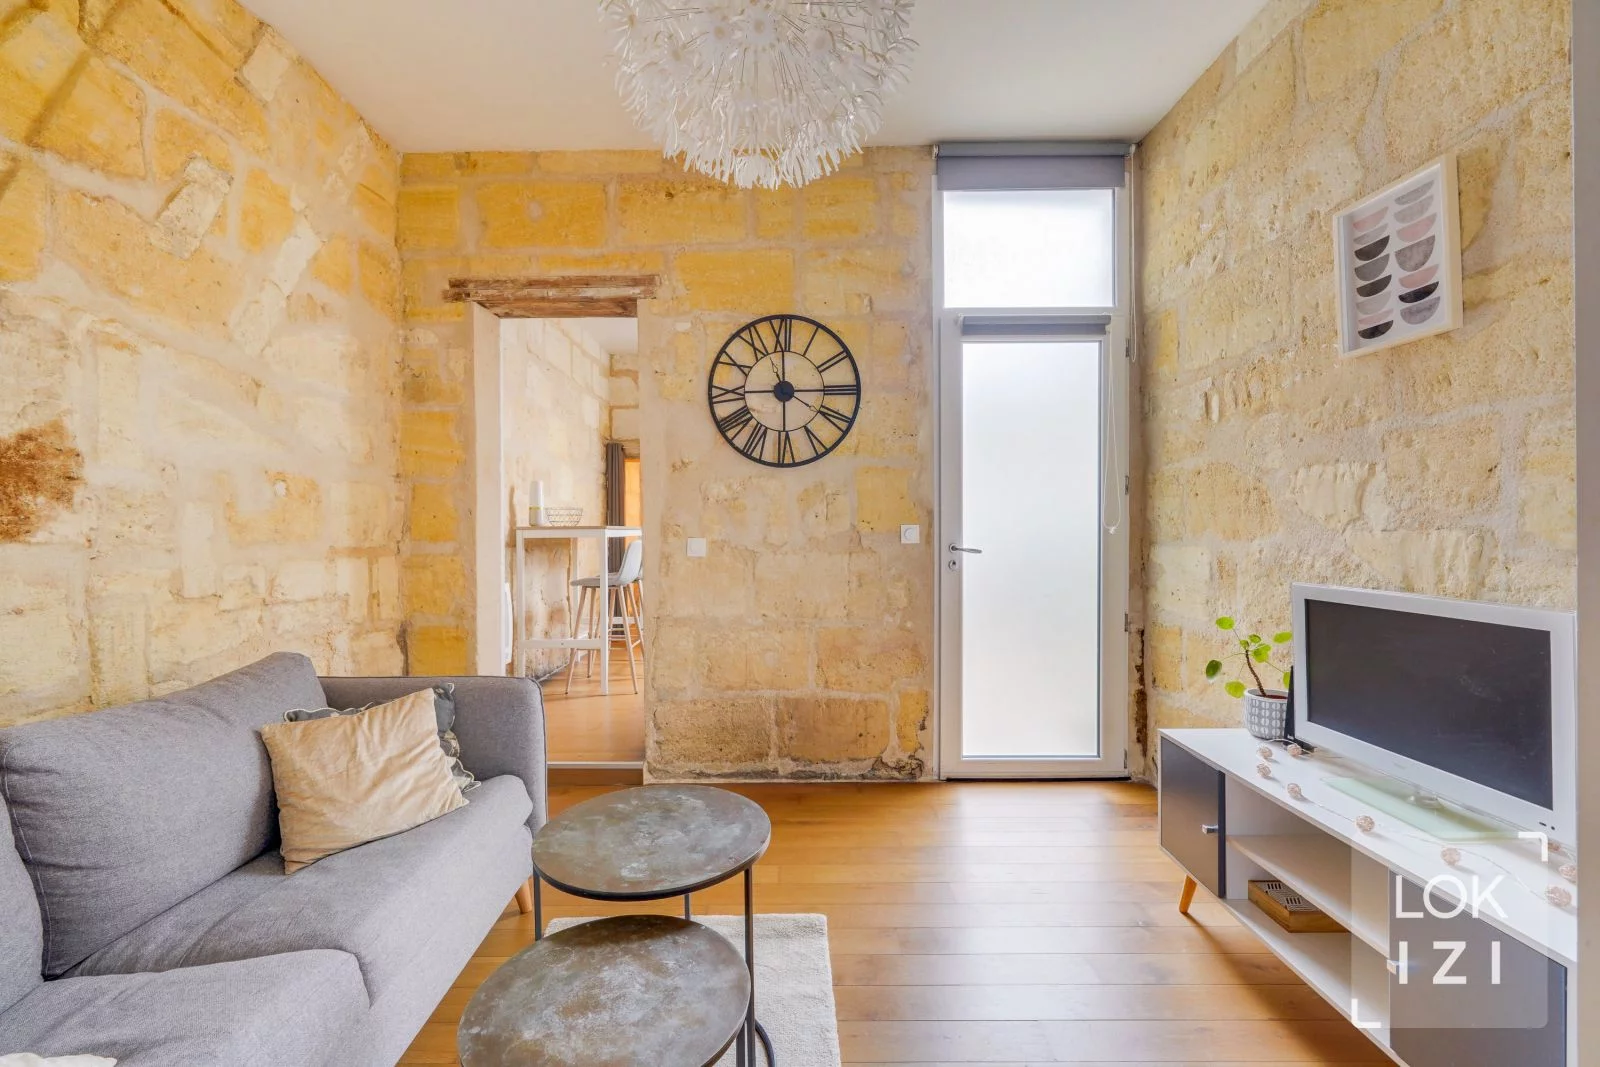 Location appartement meublé 2 pièces 39m² (Bordeaux centre - Chartrons)